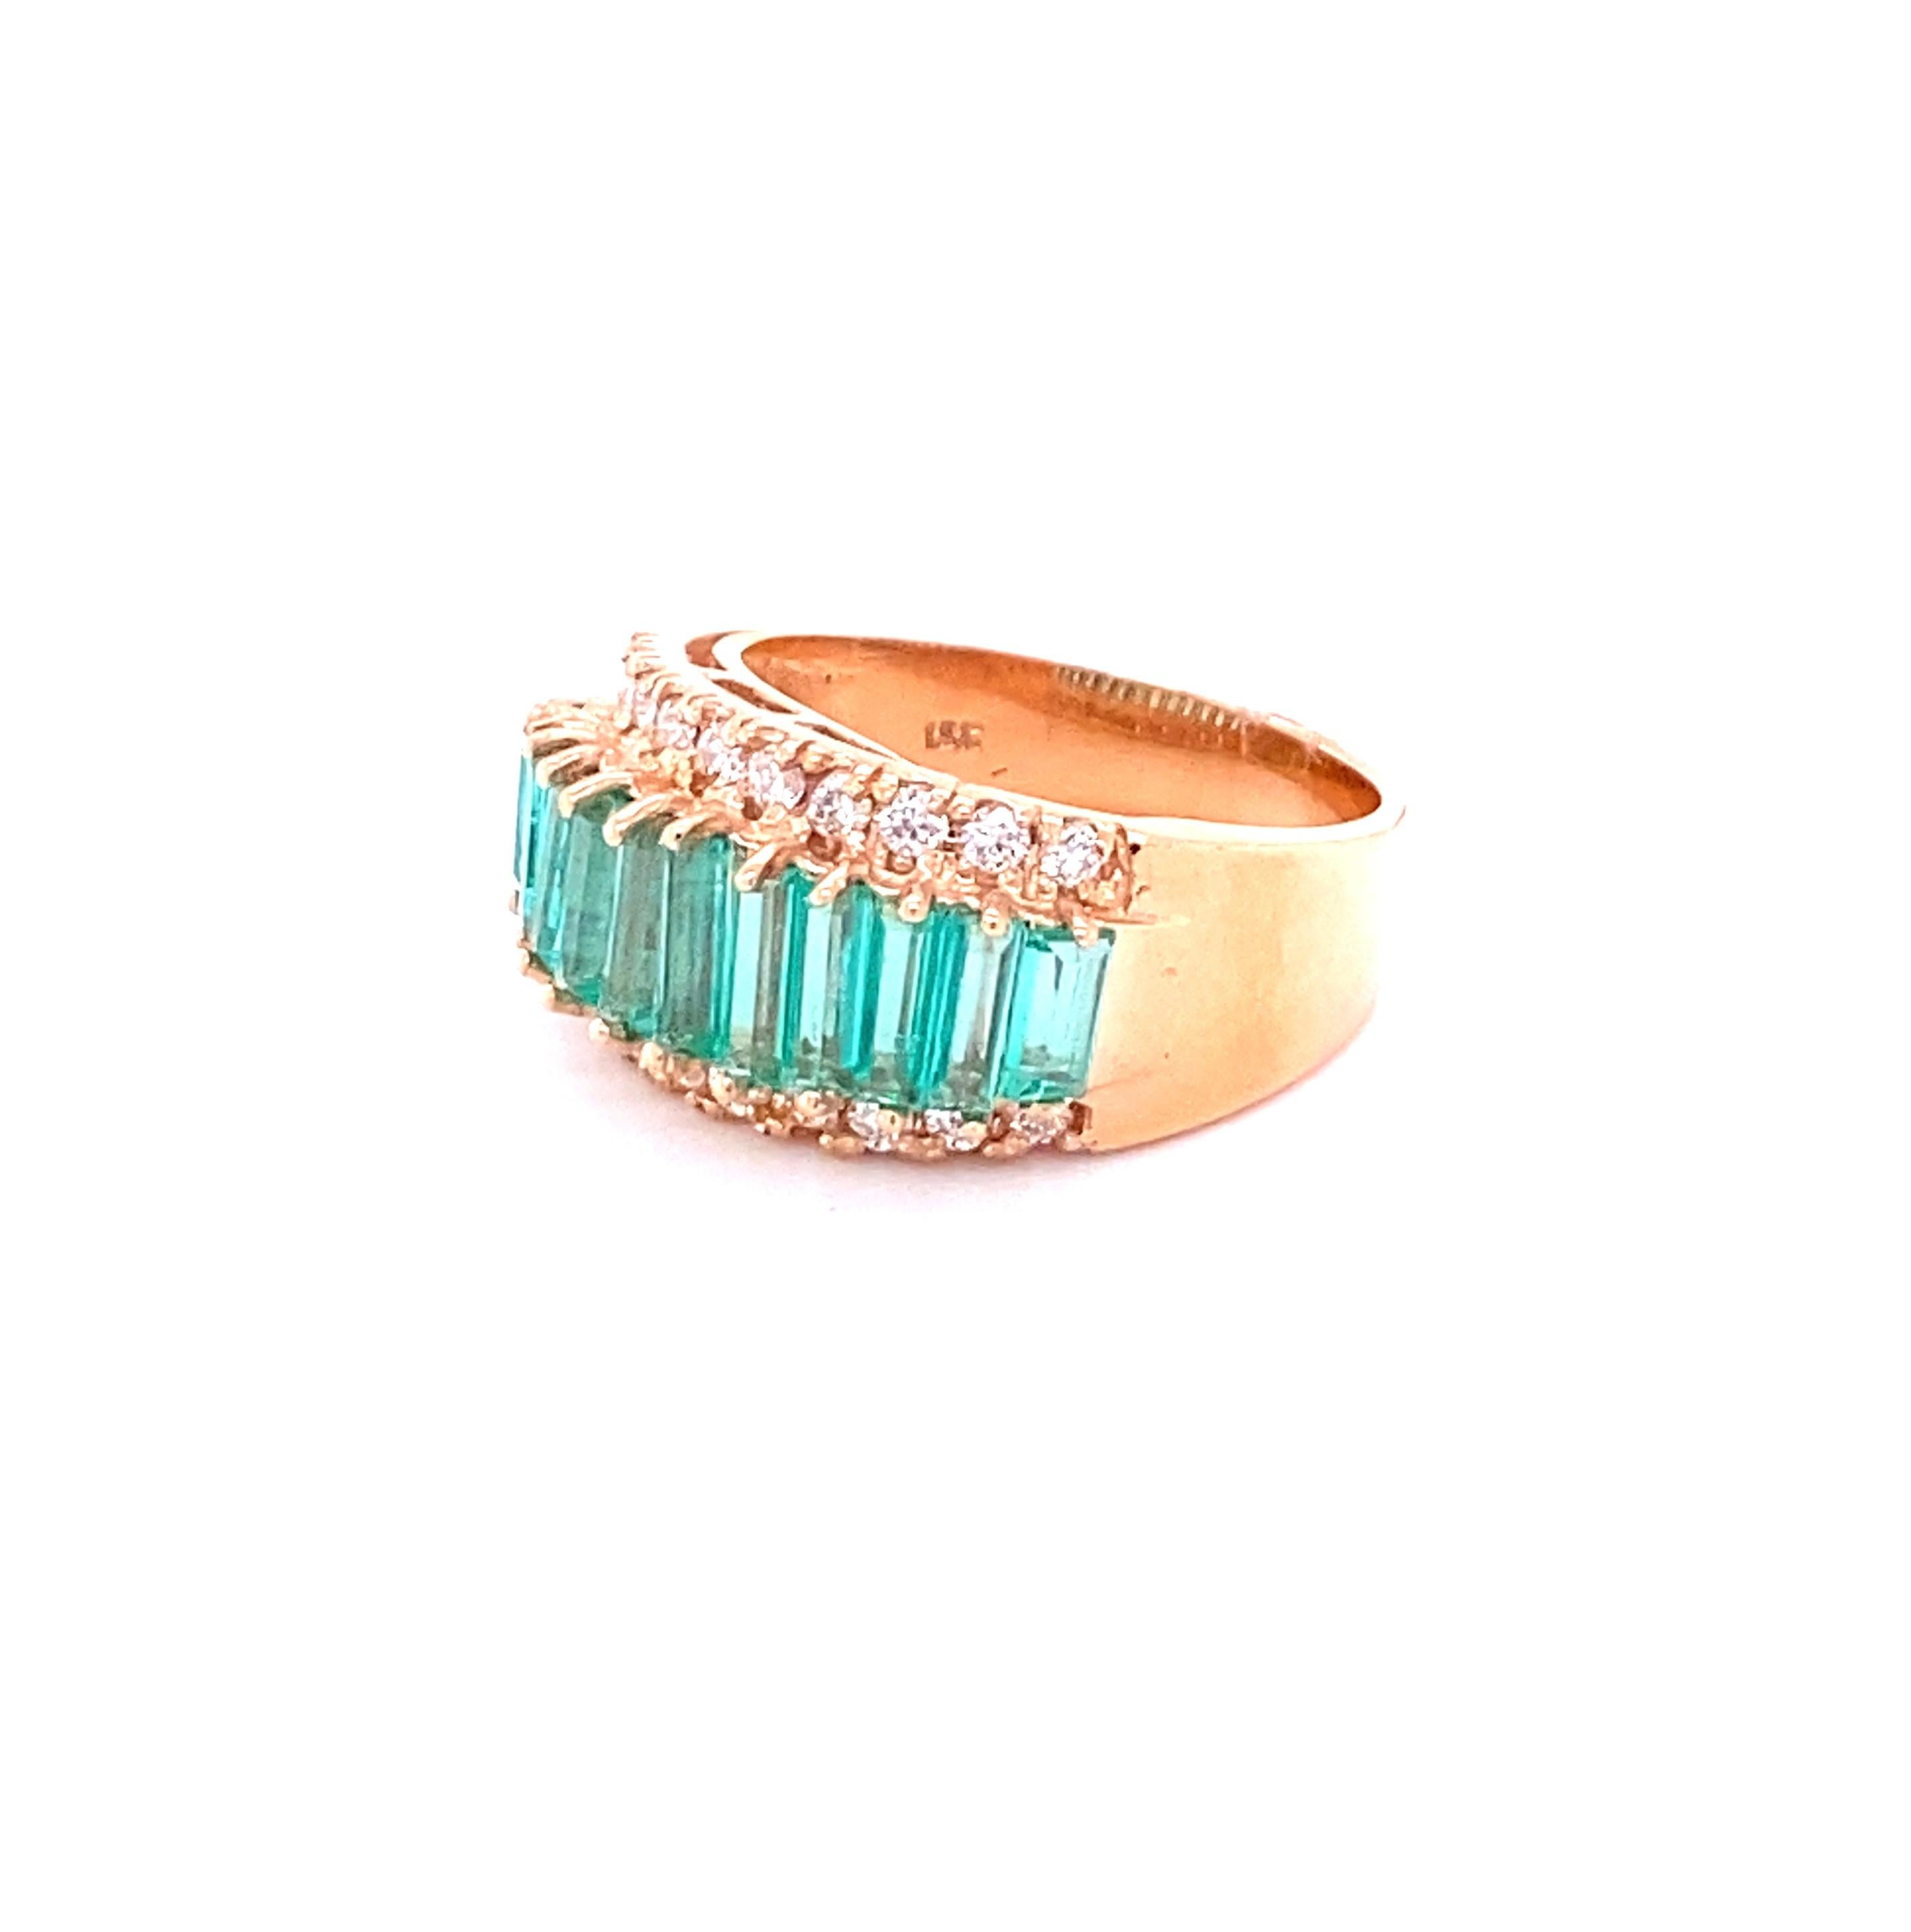 Dieser Ring hat 11 natürliche Smaragde im Baguetteschliff, die 2,12 Karat wiegen, sowie 22 Diamanten im Rundschliff, die 0,49 Karat wiegen. (Reinheit: VS, Farbe: H) 
Das Gesamtkaratgewicht des Rings beträgt 2,61 Karat.  

Der Ring ist aus 18 Karat